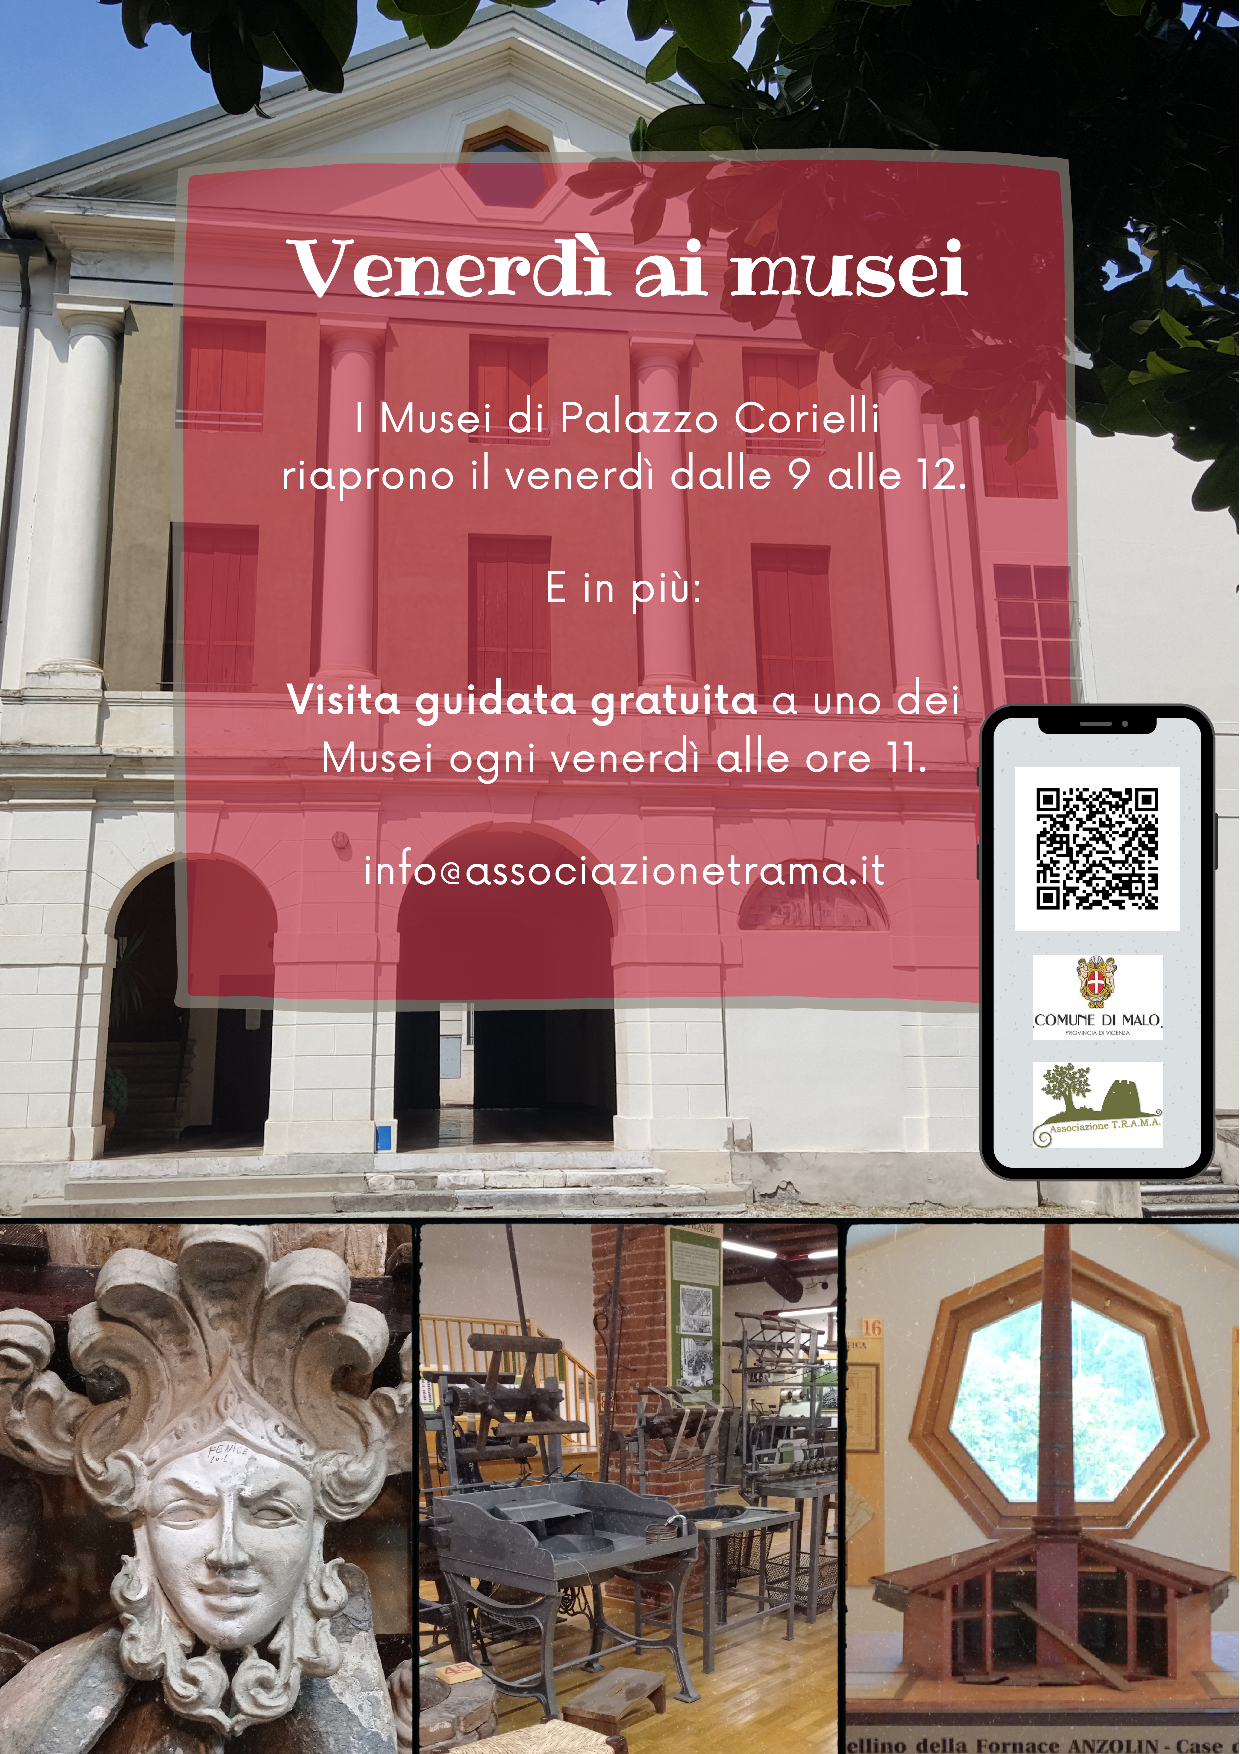 I Musei di Palazzo Corielli riaprono il venerdì